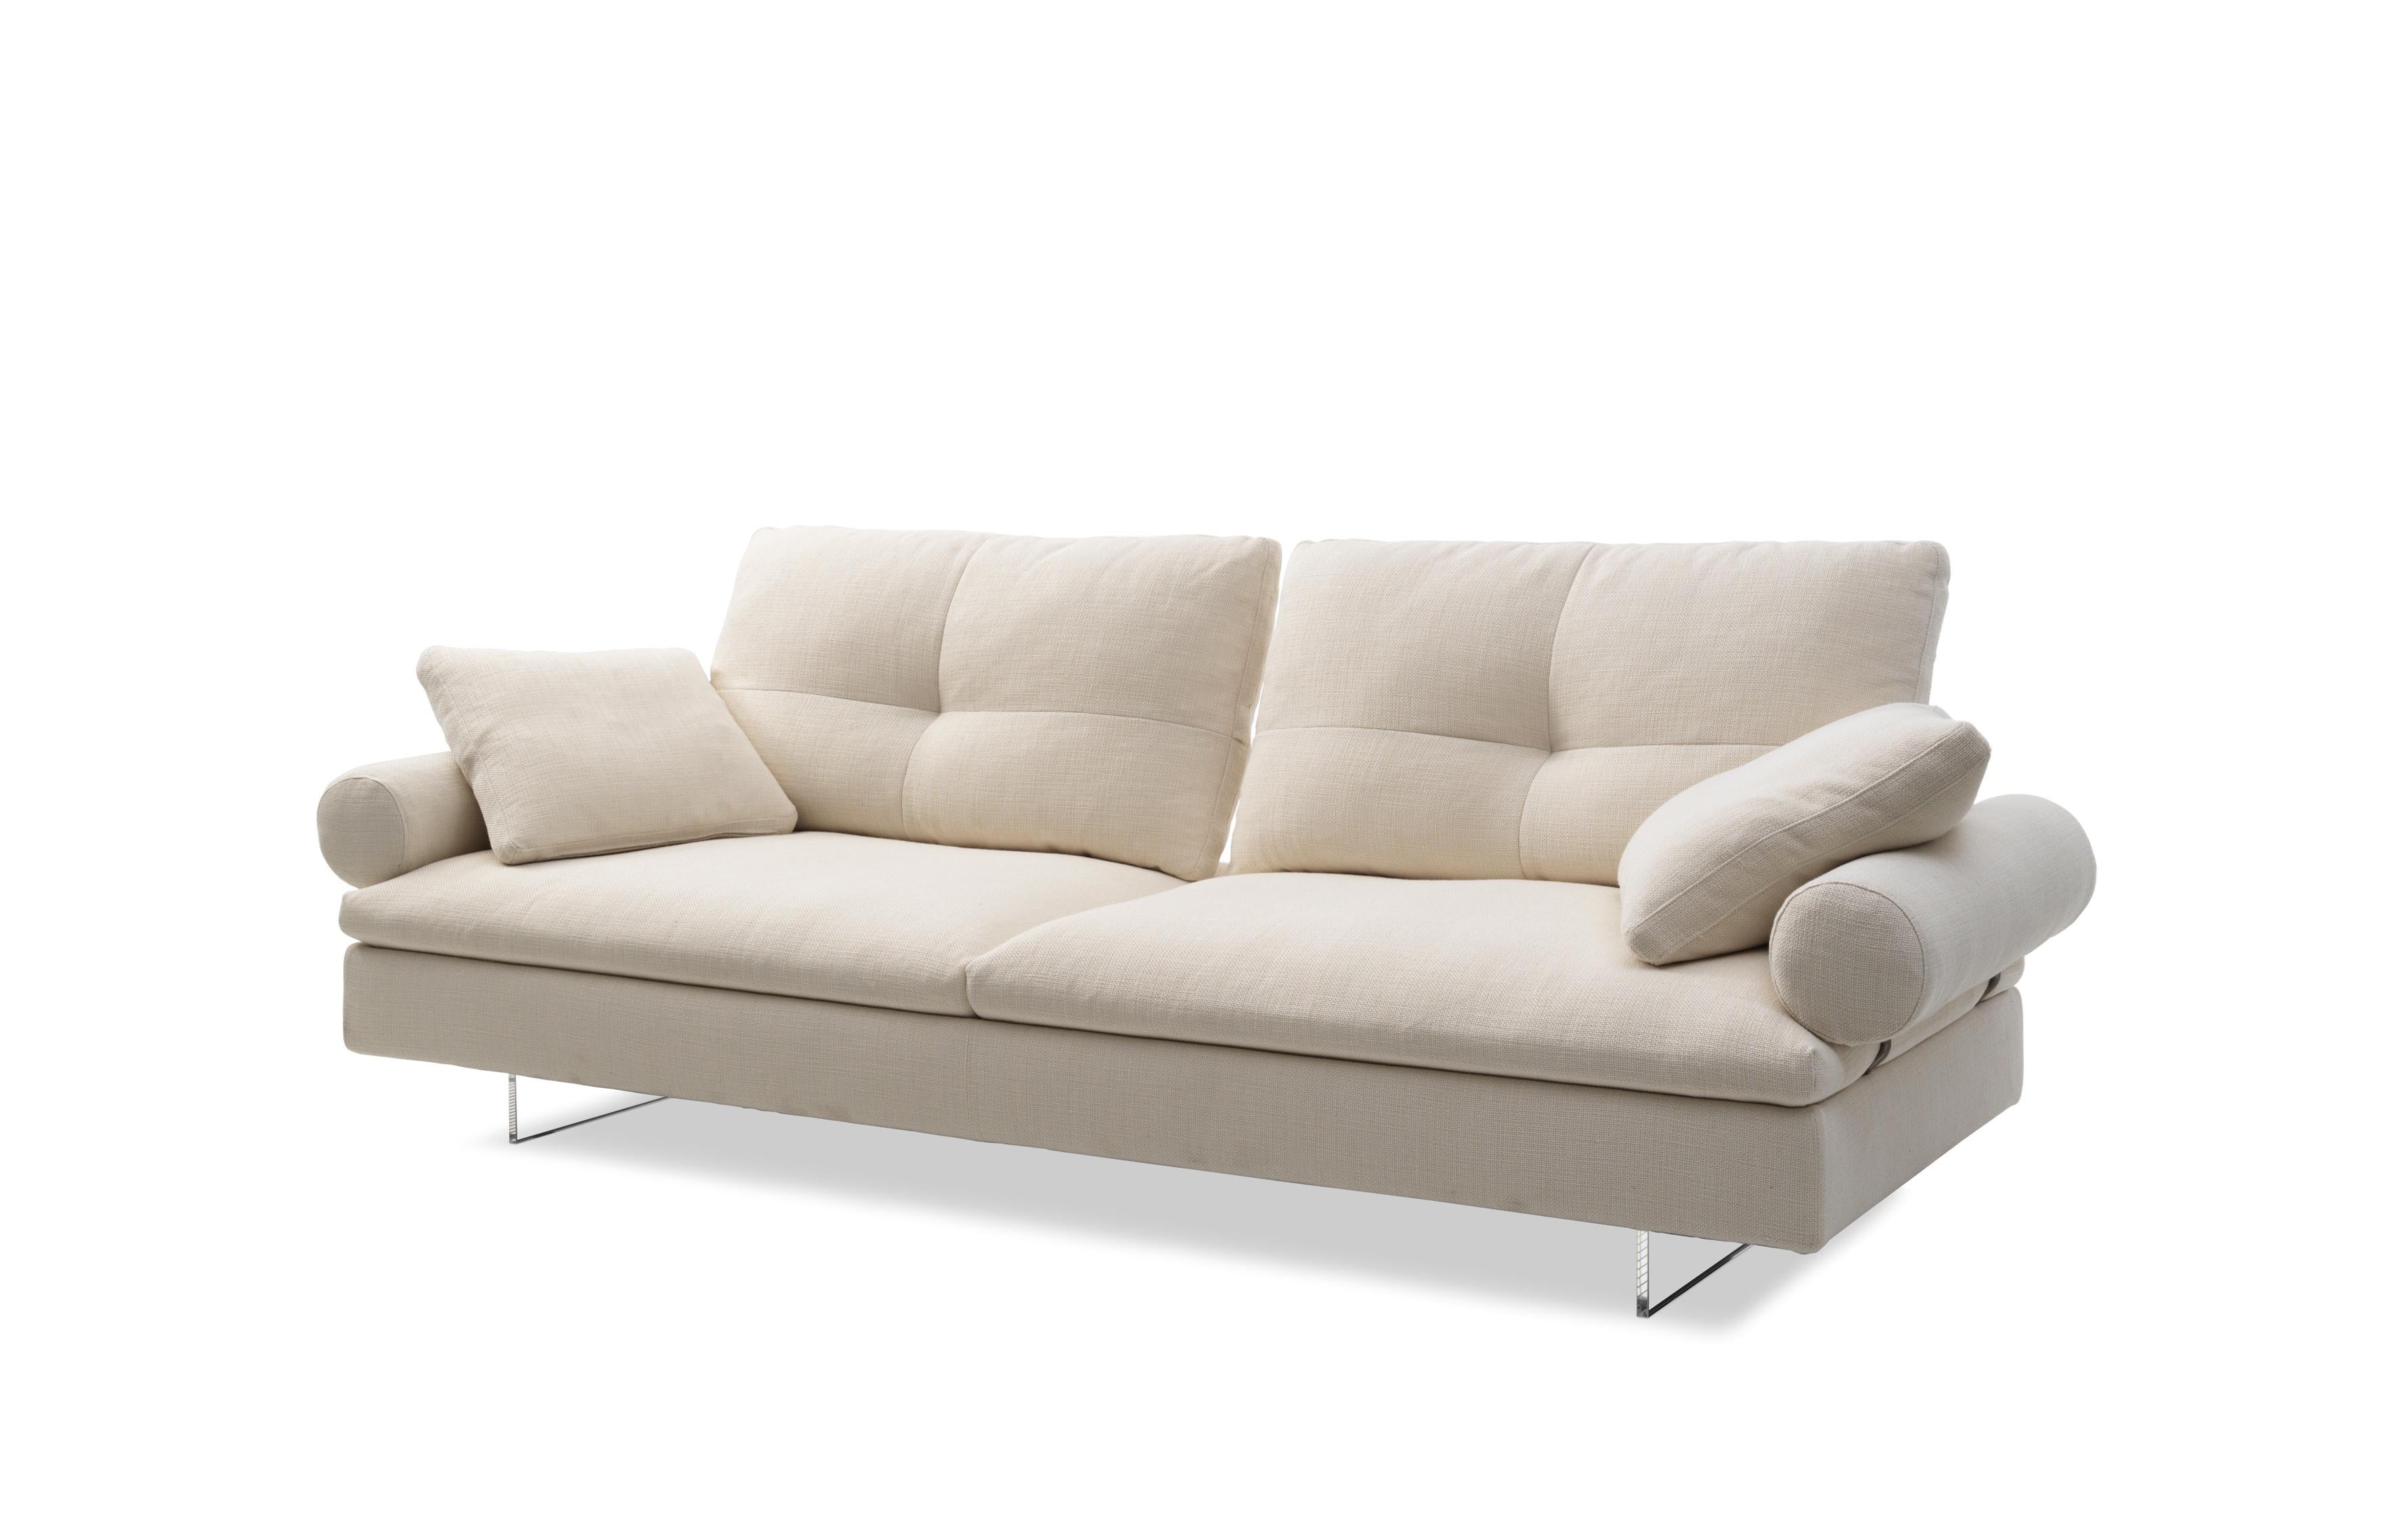 Limes New ist ein Sofa, das den philosophischen Ansatz von Saba für ein größeres Einrichtungsprojekt aufgreift: 